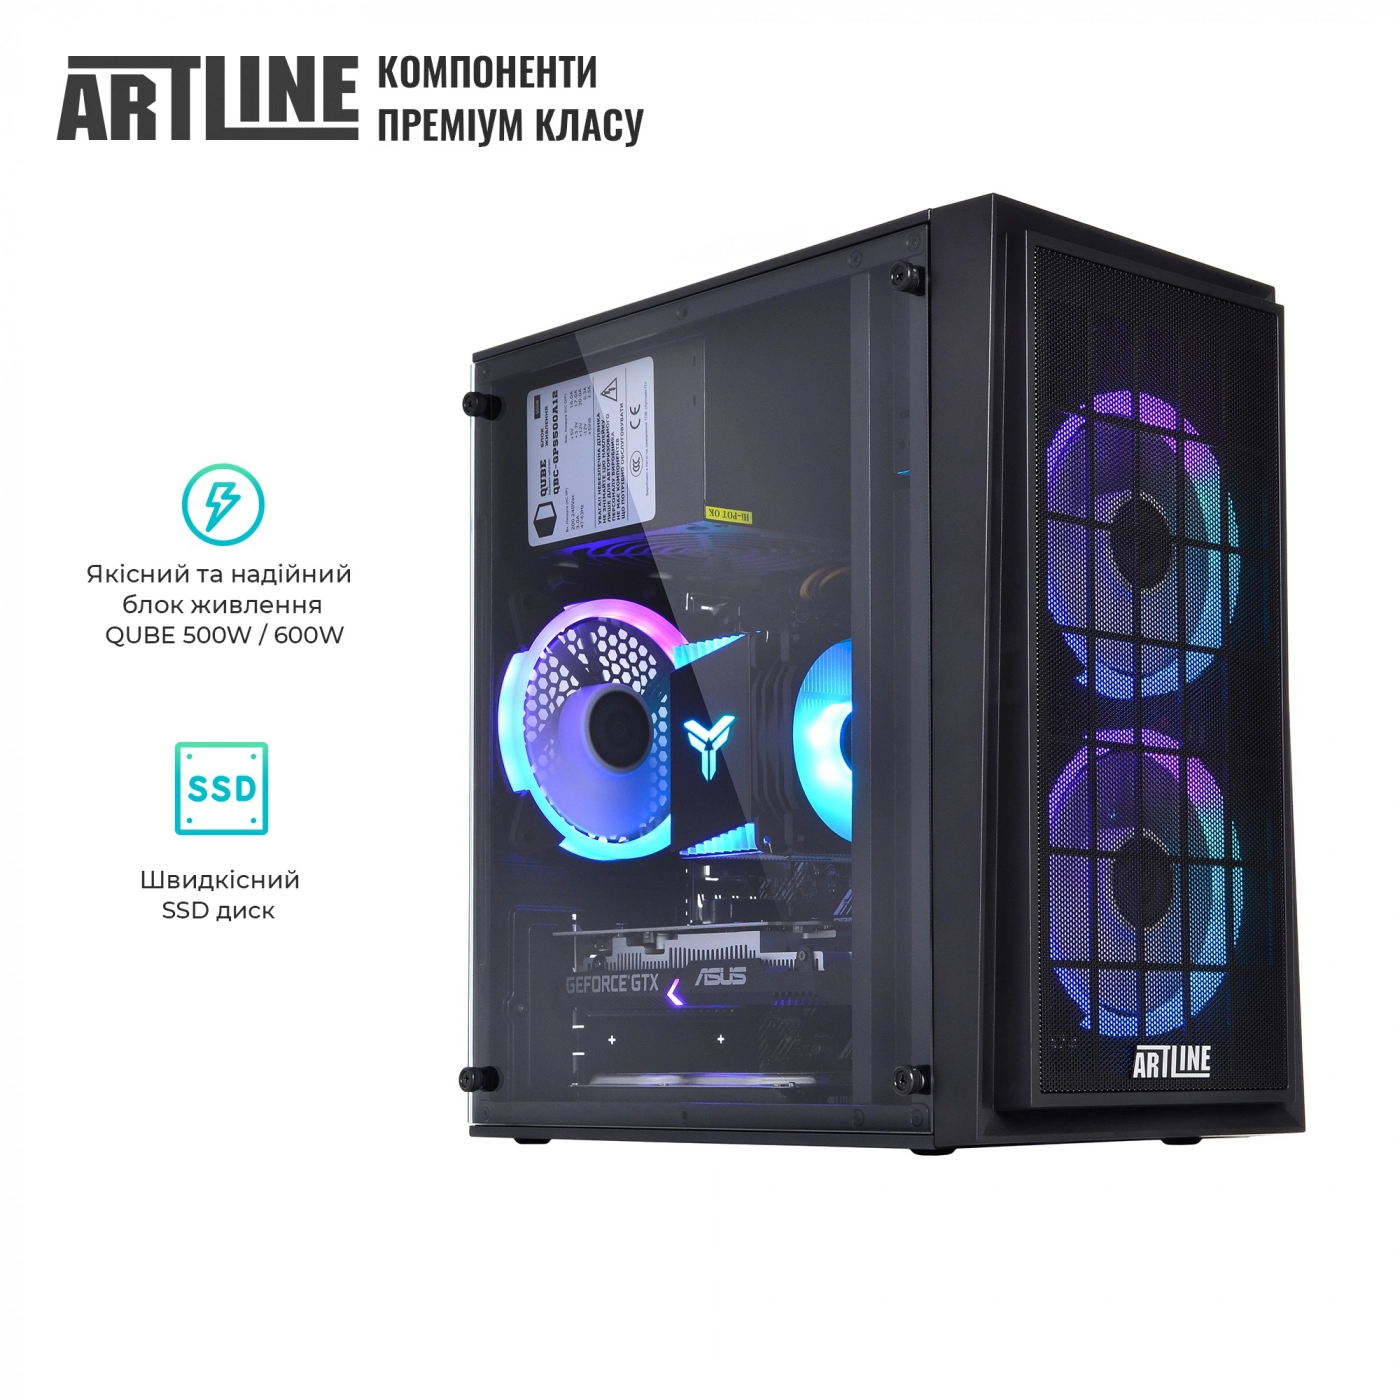 Купить Компьютер ARTLINE Gaming X42v02 - фото 8